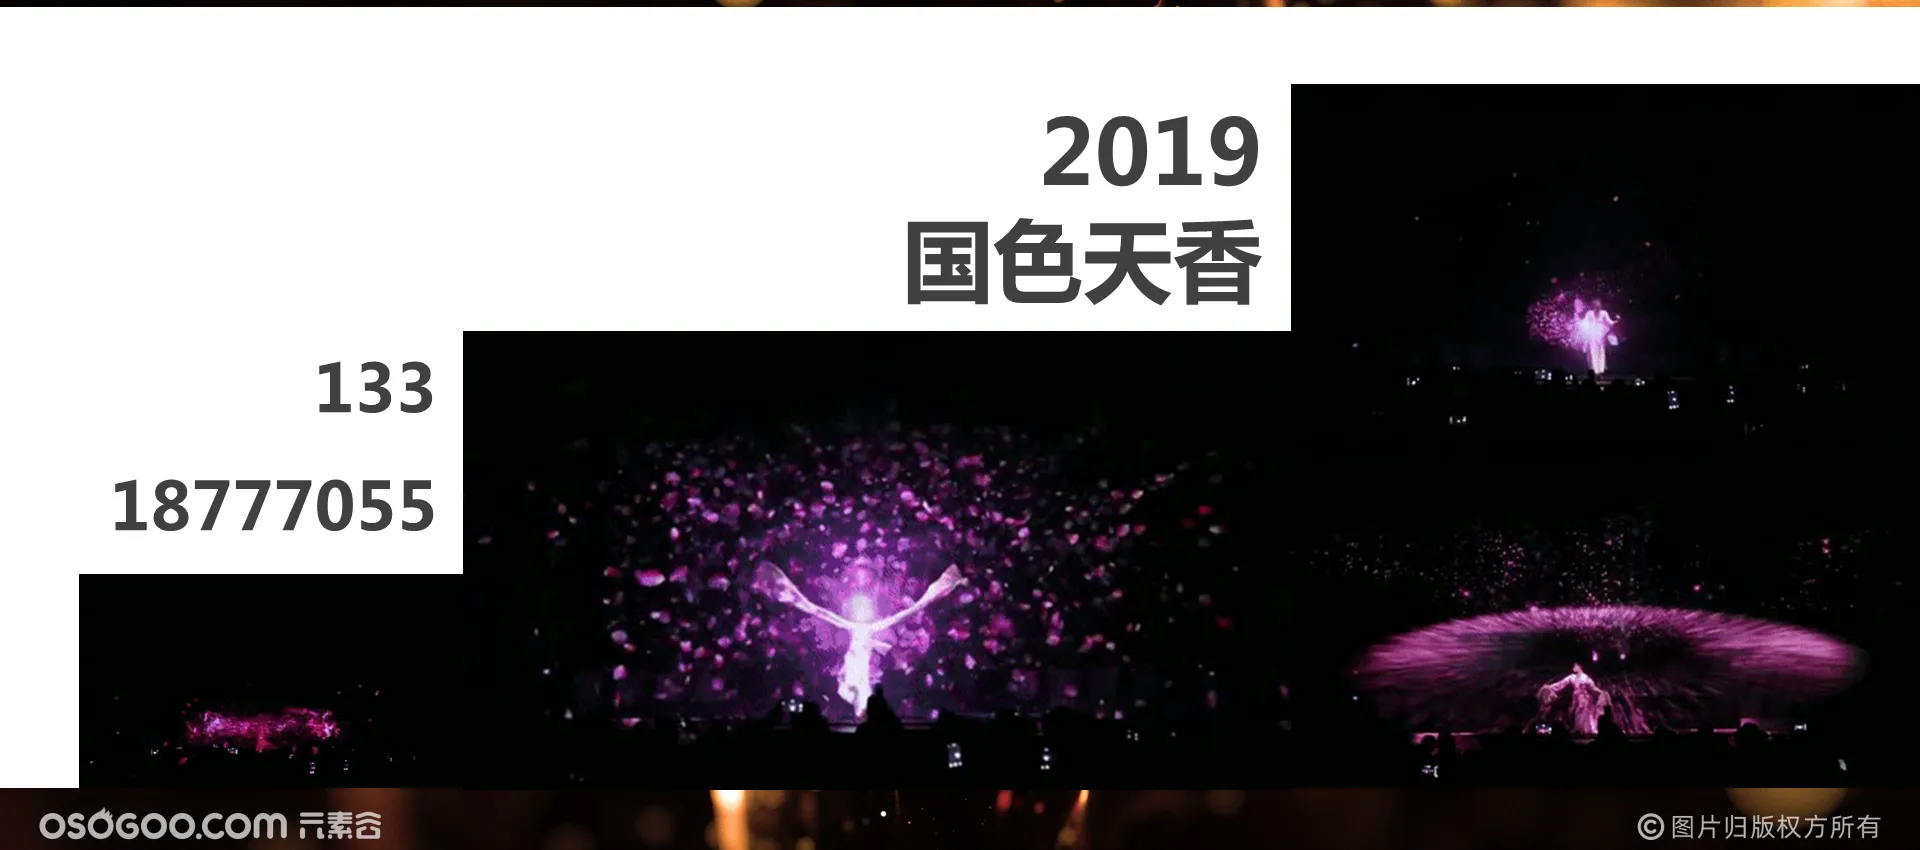 2019最新视频秀《舞动势潮》